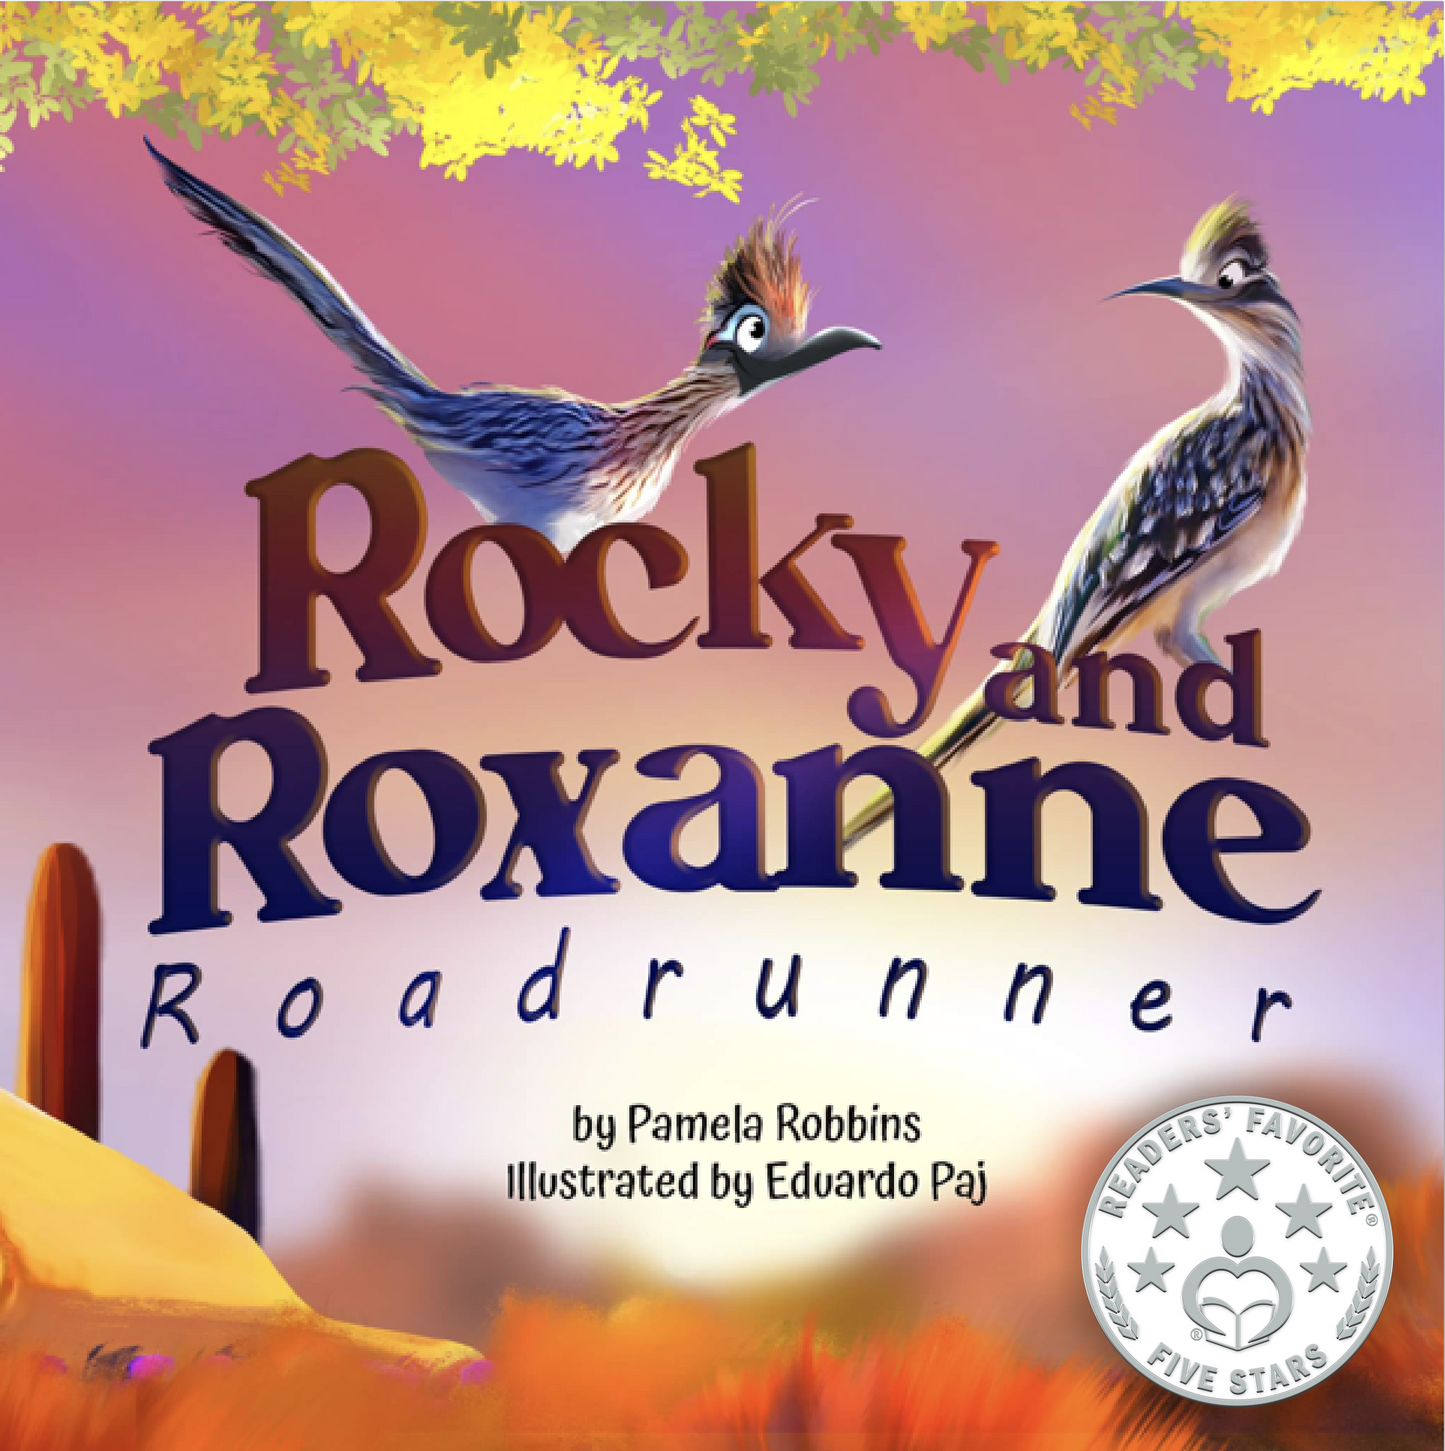 Rocky and Roxanne Roadrunner